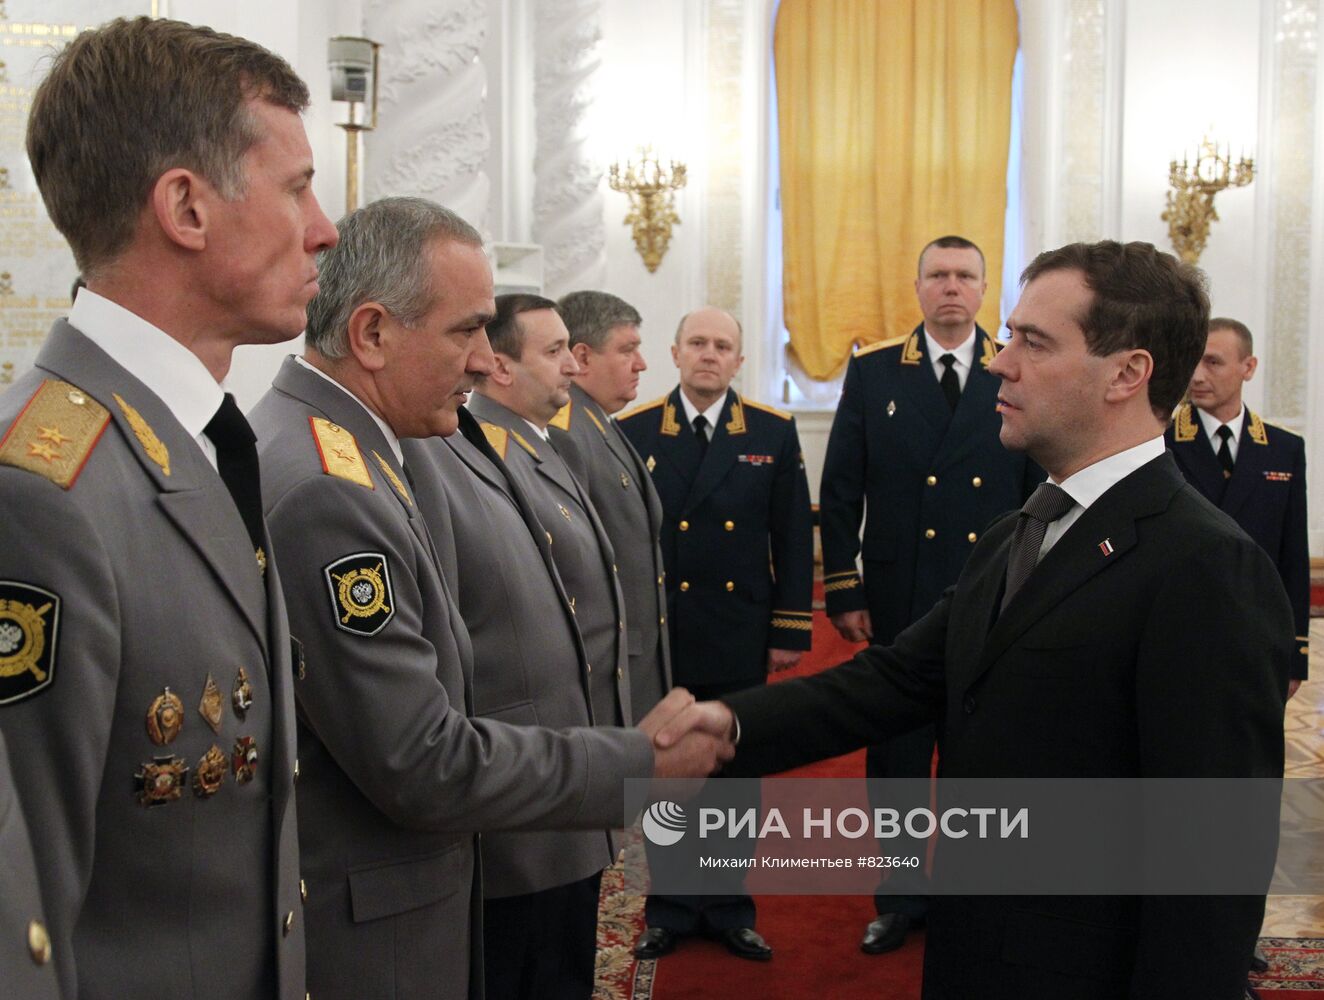 Дмитрий Медведев провел встречу с высшими офицерами в Кремле